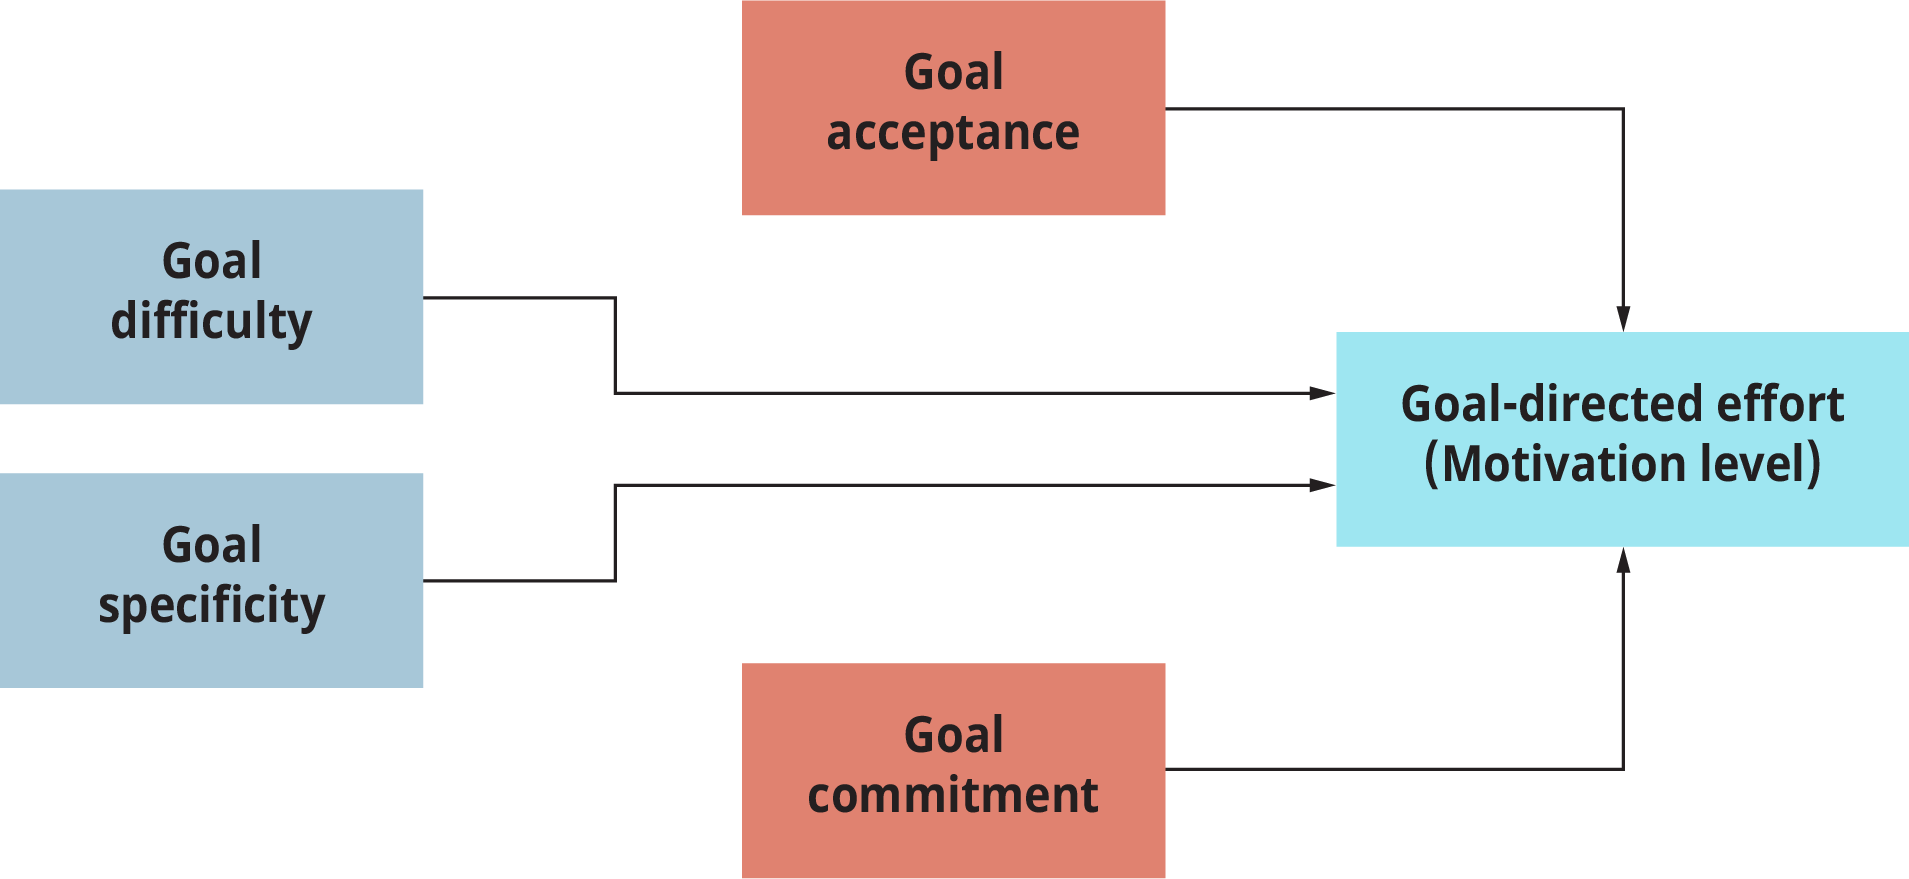 目标设定模型代表了最大限度地提高目标导向努力的必要条件。